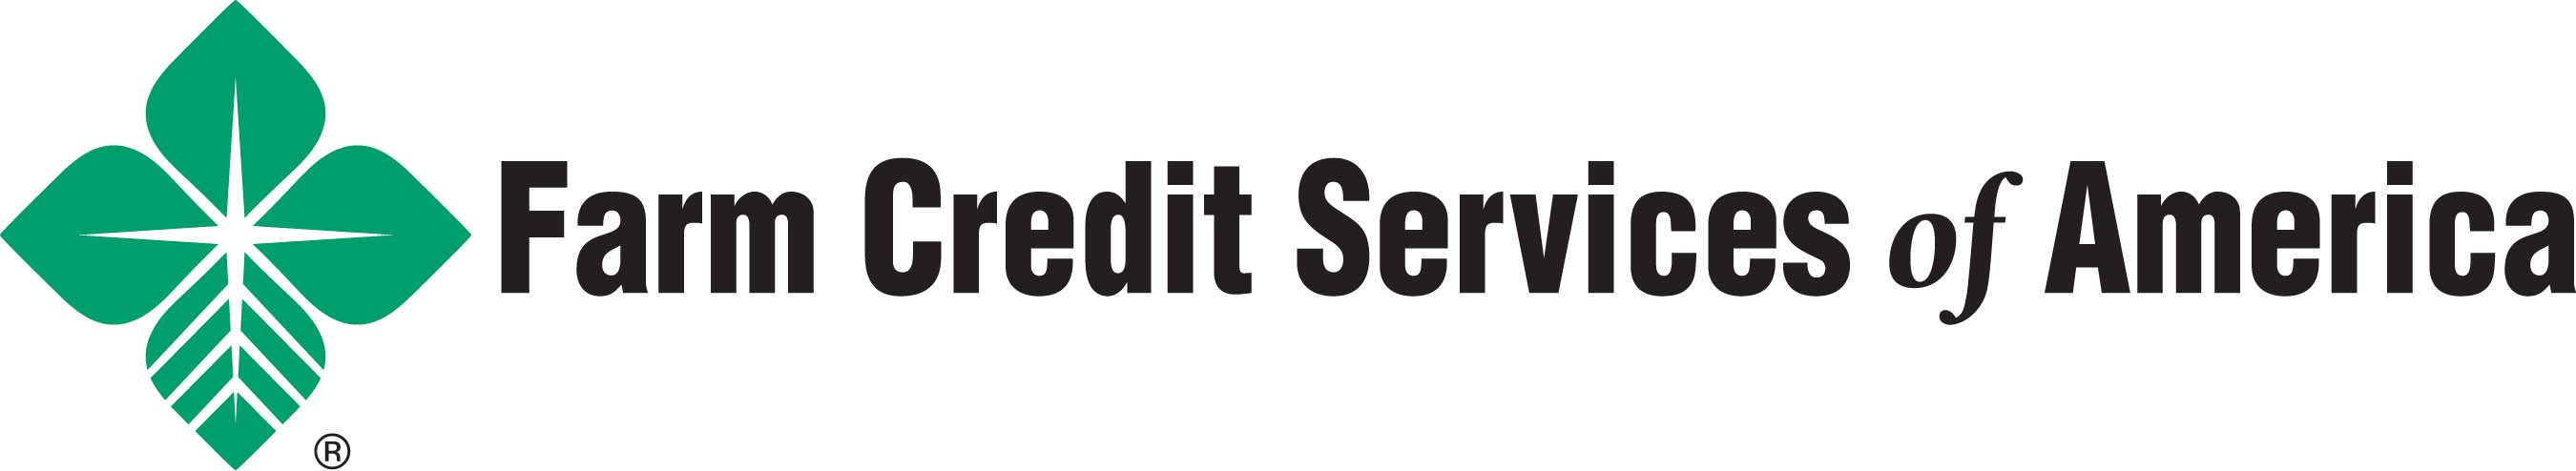 Farm Credit Services of America Company Logo